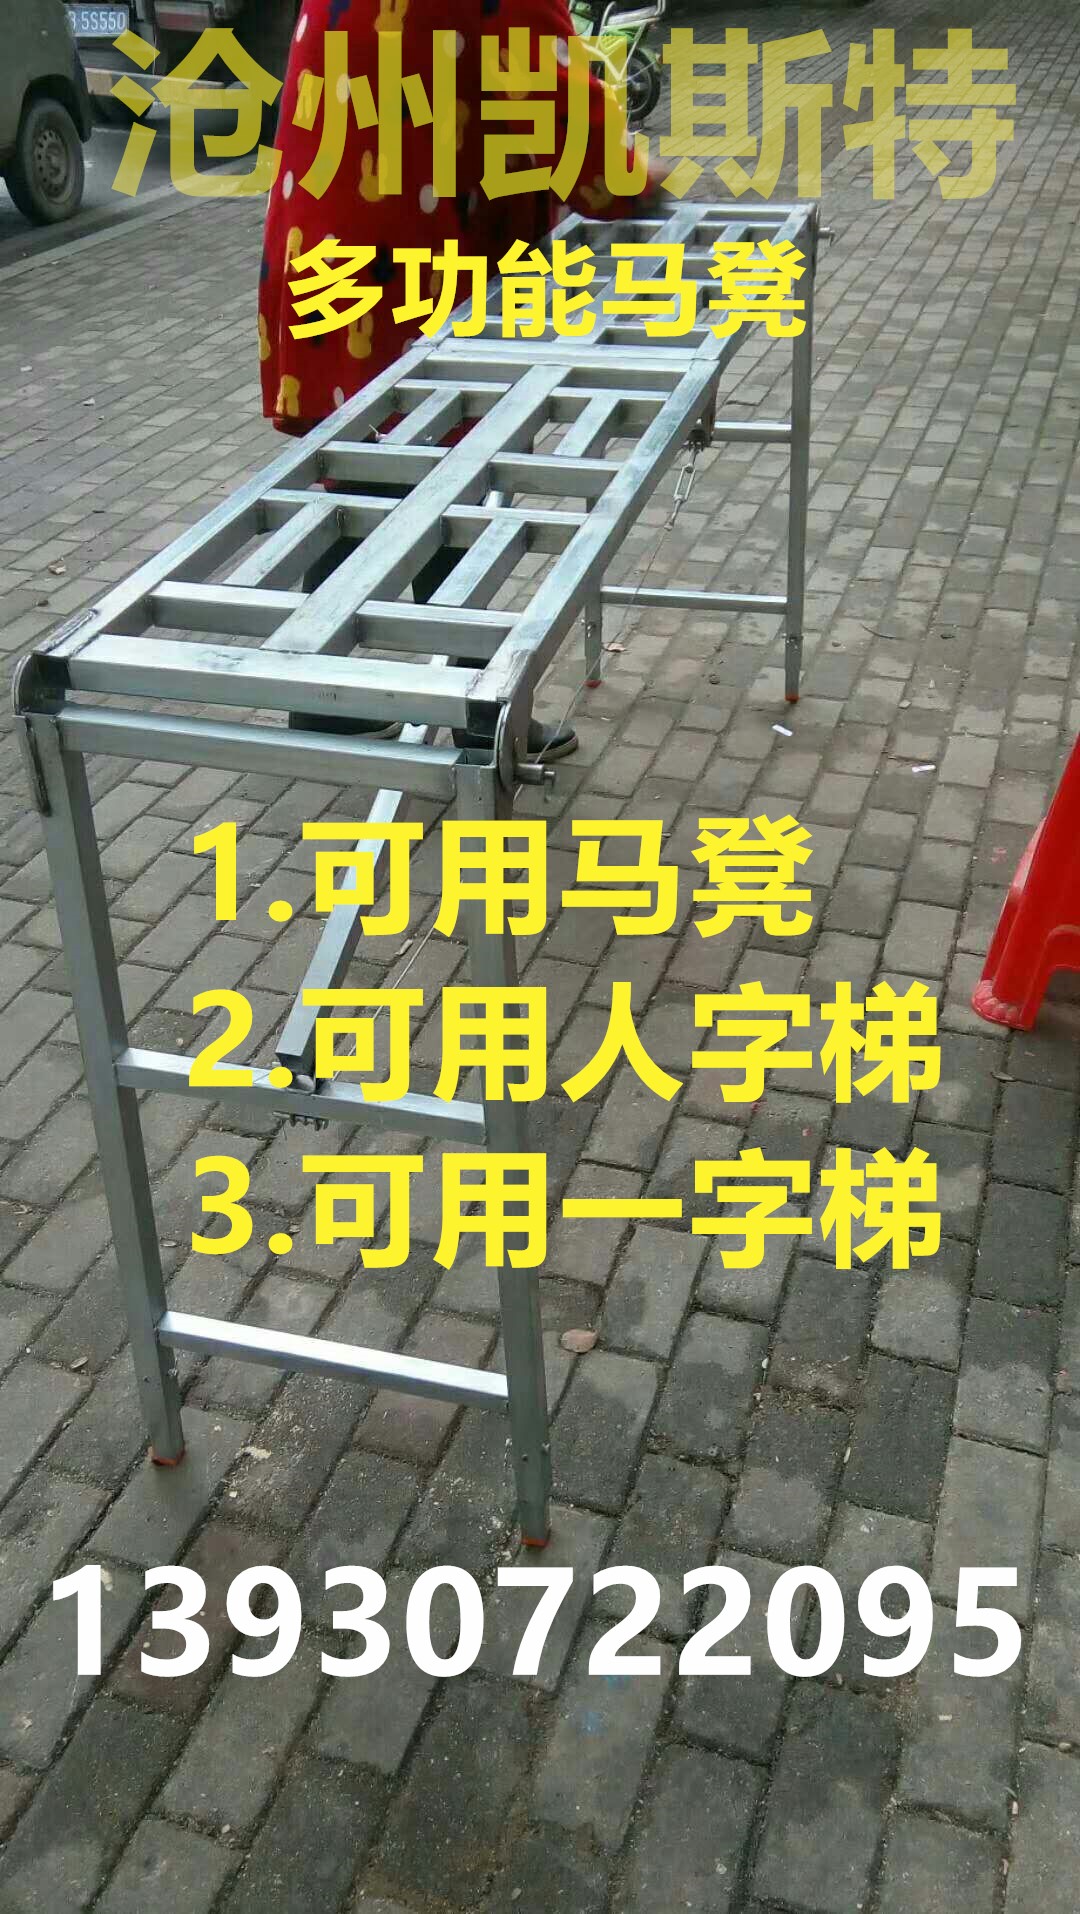 厂家直销多功能折叠式便携式马凳